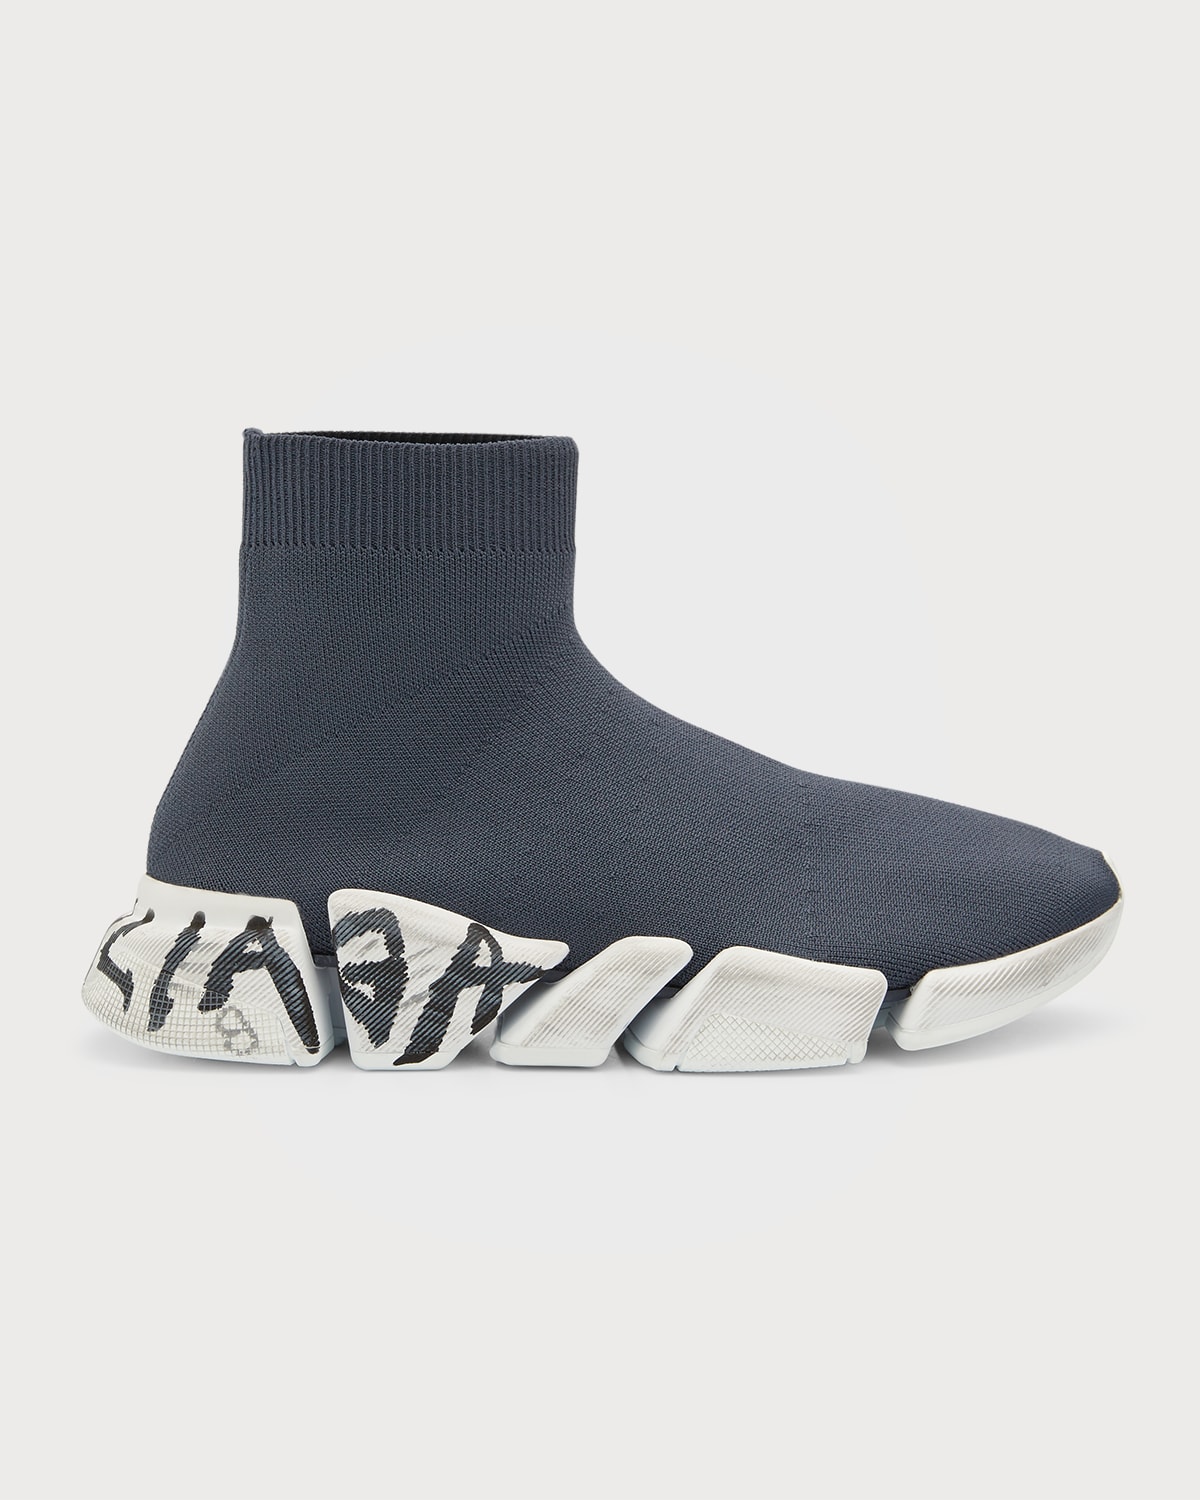 Men’s Designer Sneakers | Neiman Marcus